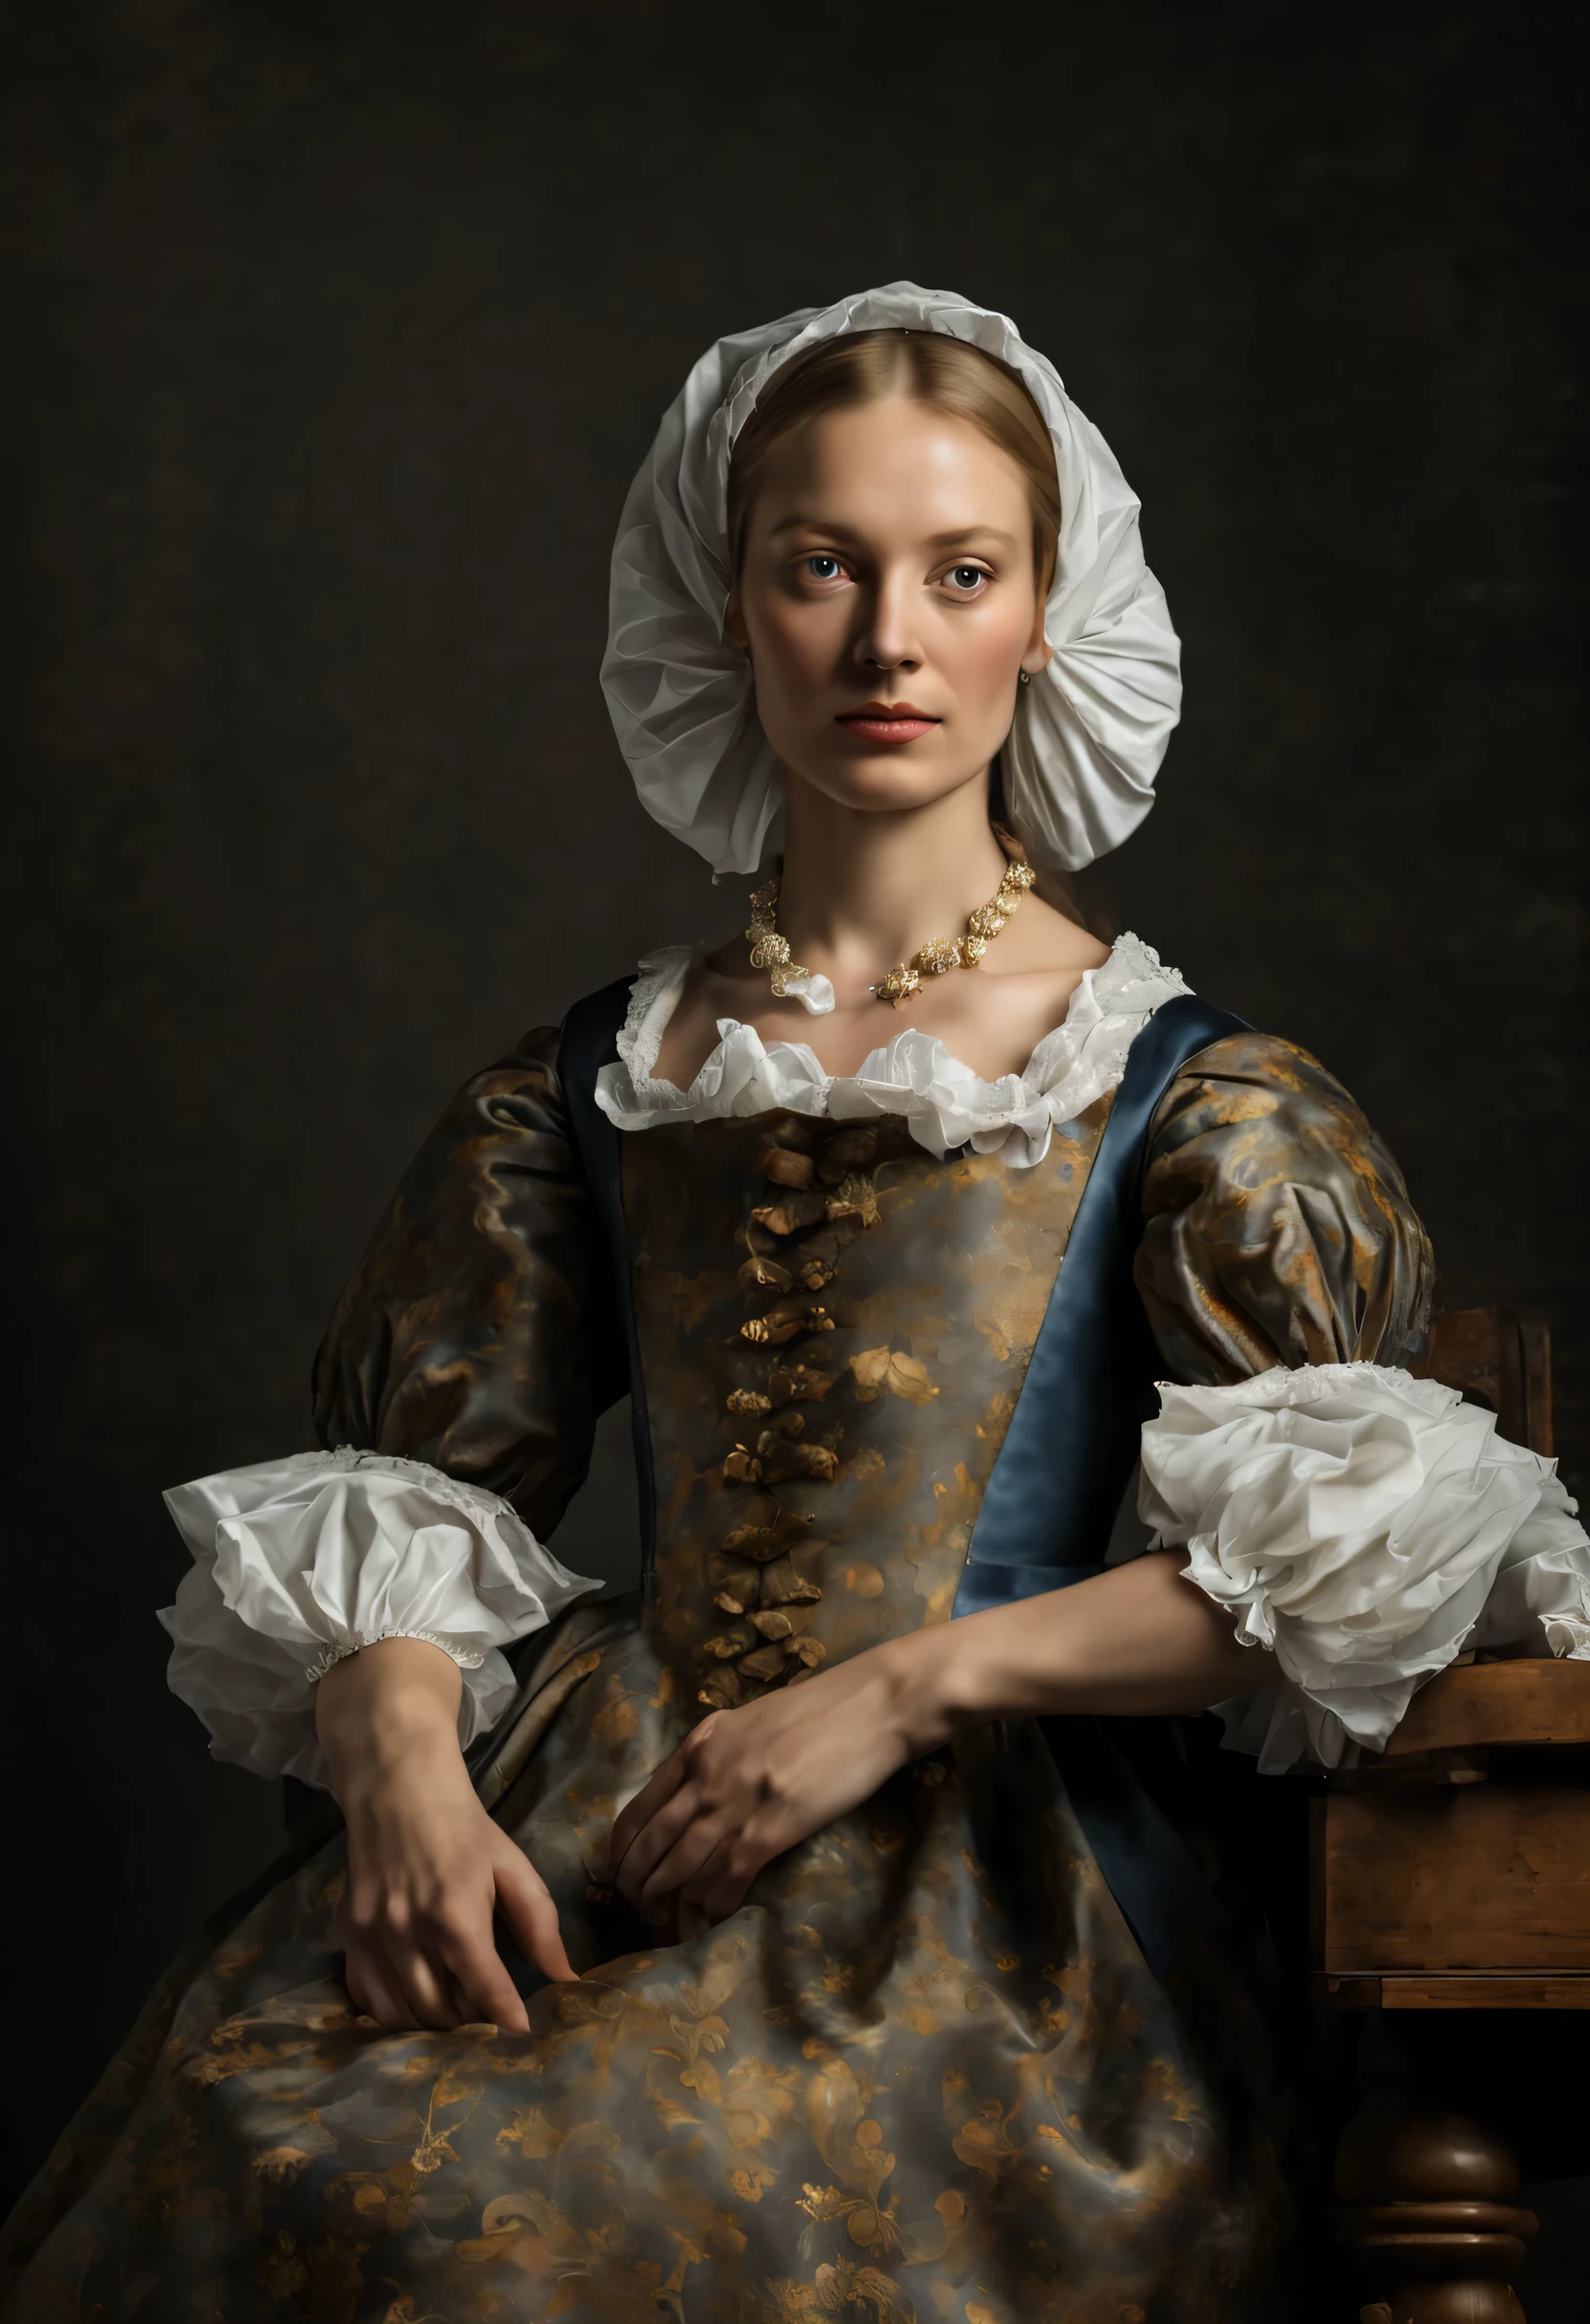 네덜란드 황금기 네덜란드 여성의 흉상 초상화.., 현실적인, 요하네스 베르메르 스타일, 렘브란트 스타일, 17세기 유럽 소녀, 검정색 배경에, เด็กสาวชาวดัตช์ที่มีท่าทาง신비한, 17세기 네덜란드 귀족의 복장, 부드러운 확산광, 꼼꼼한 디테일, 럭셔리한 객실, 유럽인의 피부색, 얼굴 특징, 걸작, 영원한, 신비한, 빛나는, 바로크 미술 스타일, 기적적, --V6 --A1000